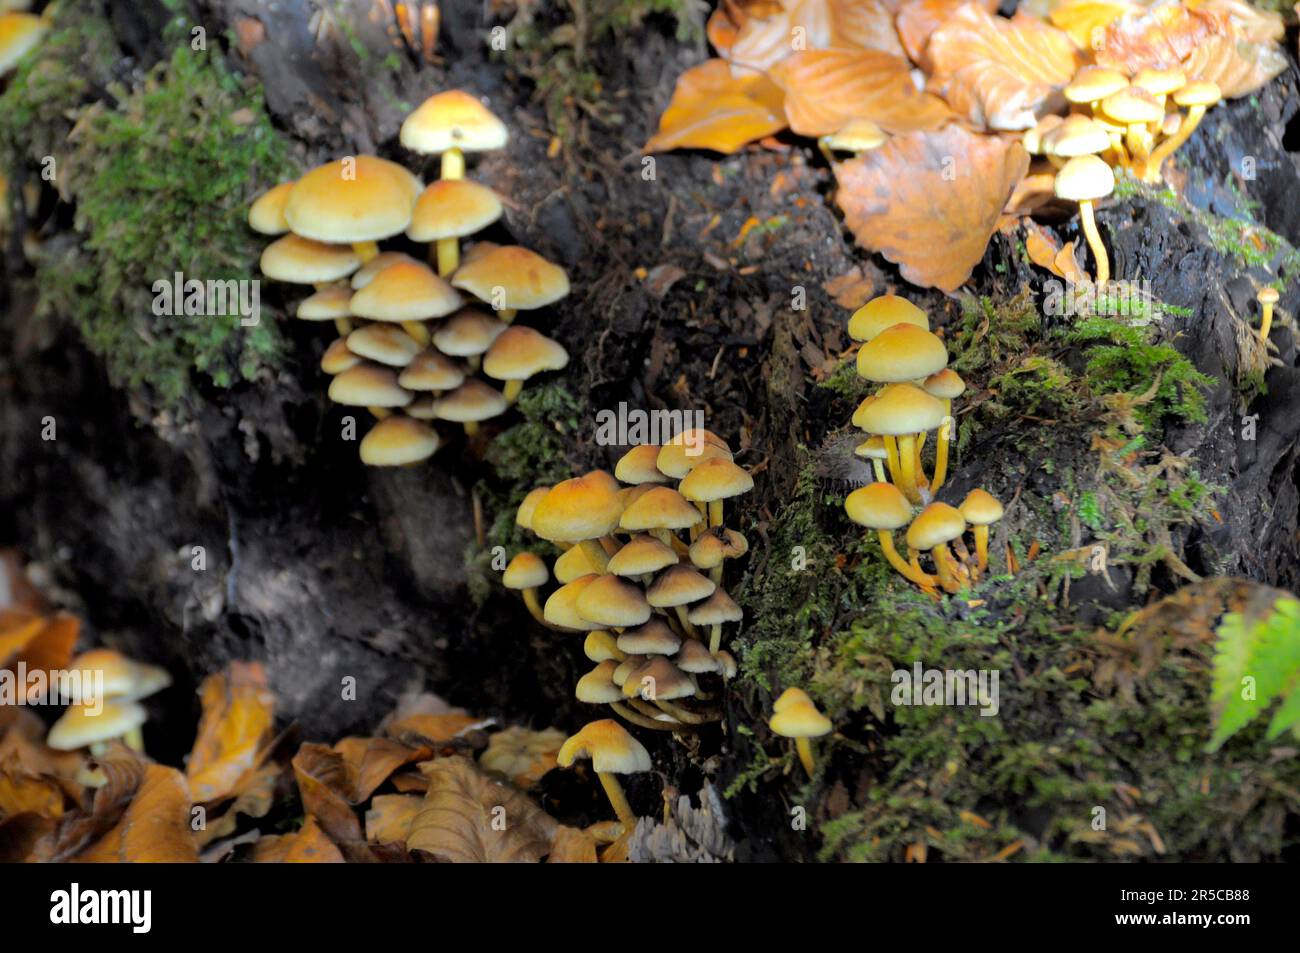 Wild mushrooms on a tree stump, near Maulbronn Stock Photo